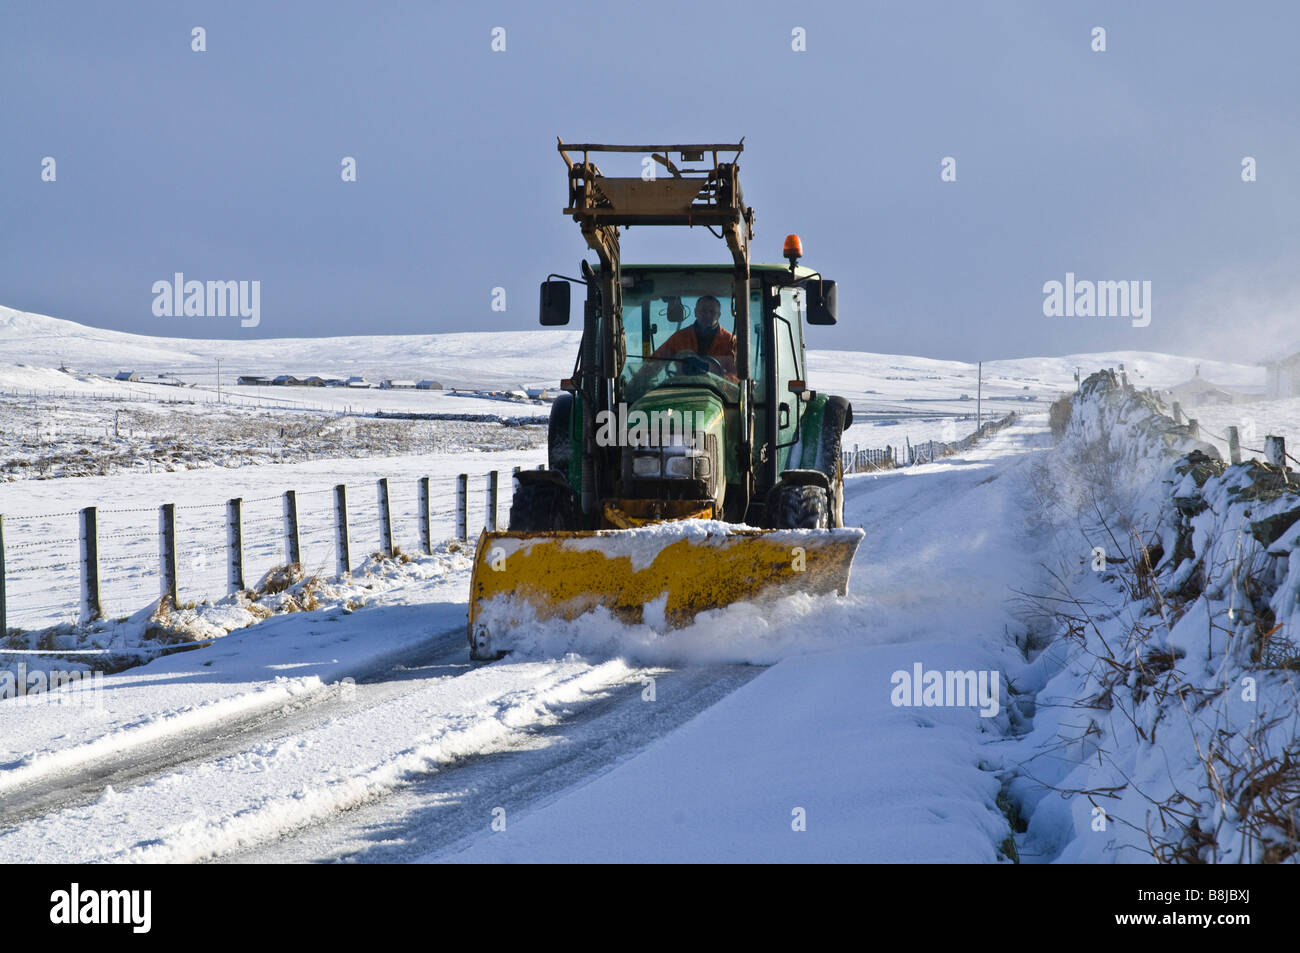 dh ROADS Reino Unido Tractor de granja de invierno quitanieve nieve de Orkney carreteras de campo arado de Escocia tractores Foto de stock